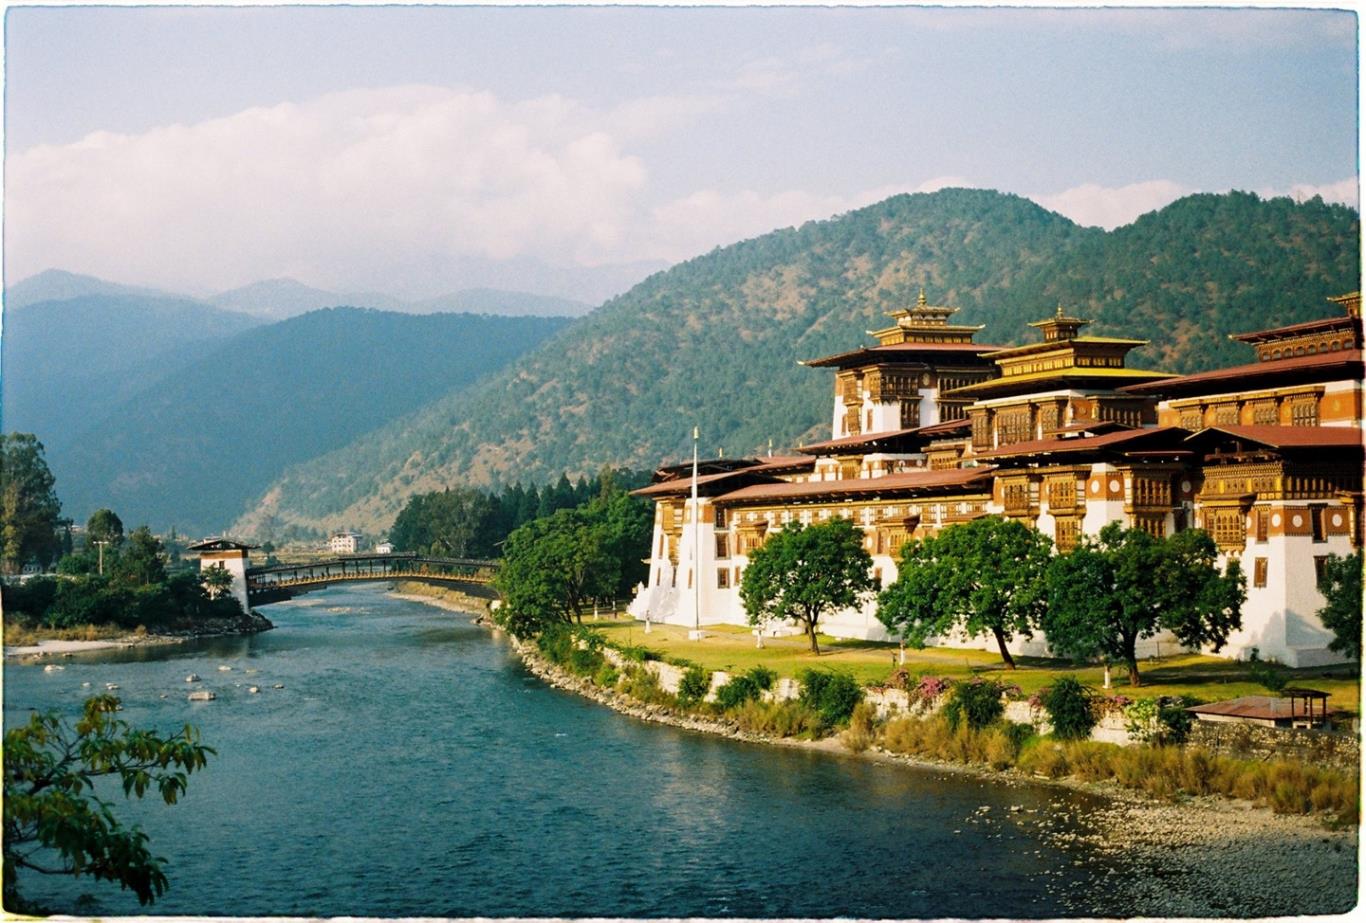 Cẩm nang du lịch Bhutan, Thimphu, Paro từ A đến Z